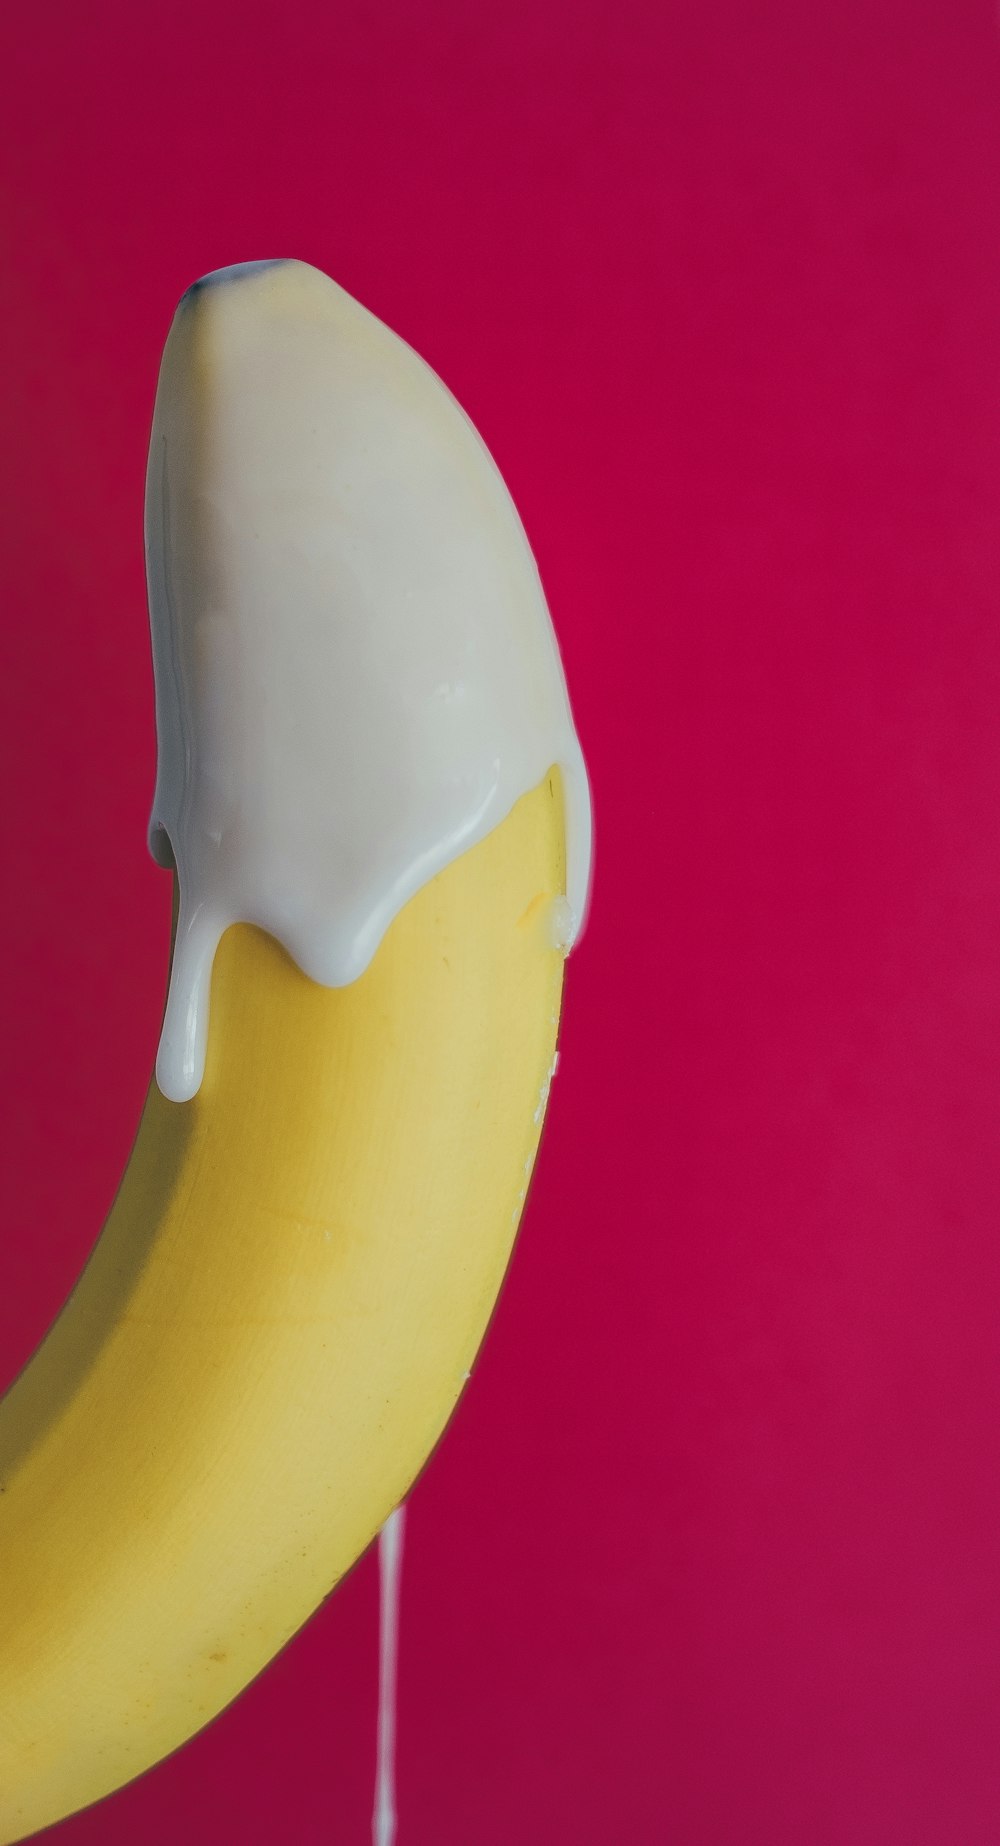 Plátano amarillo con nata